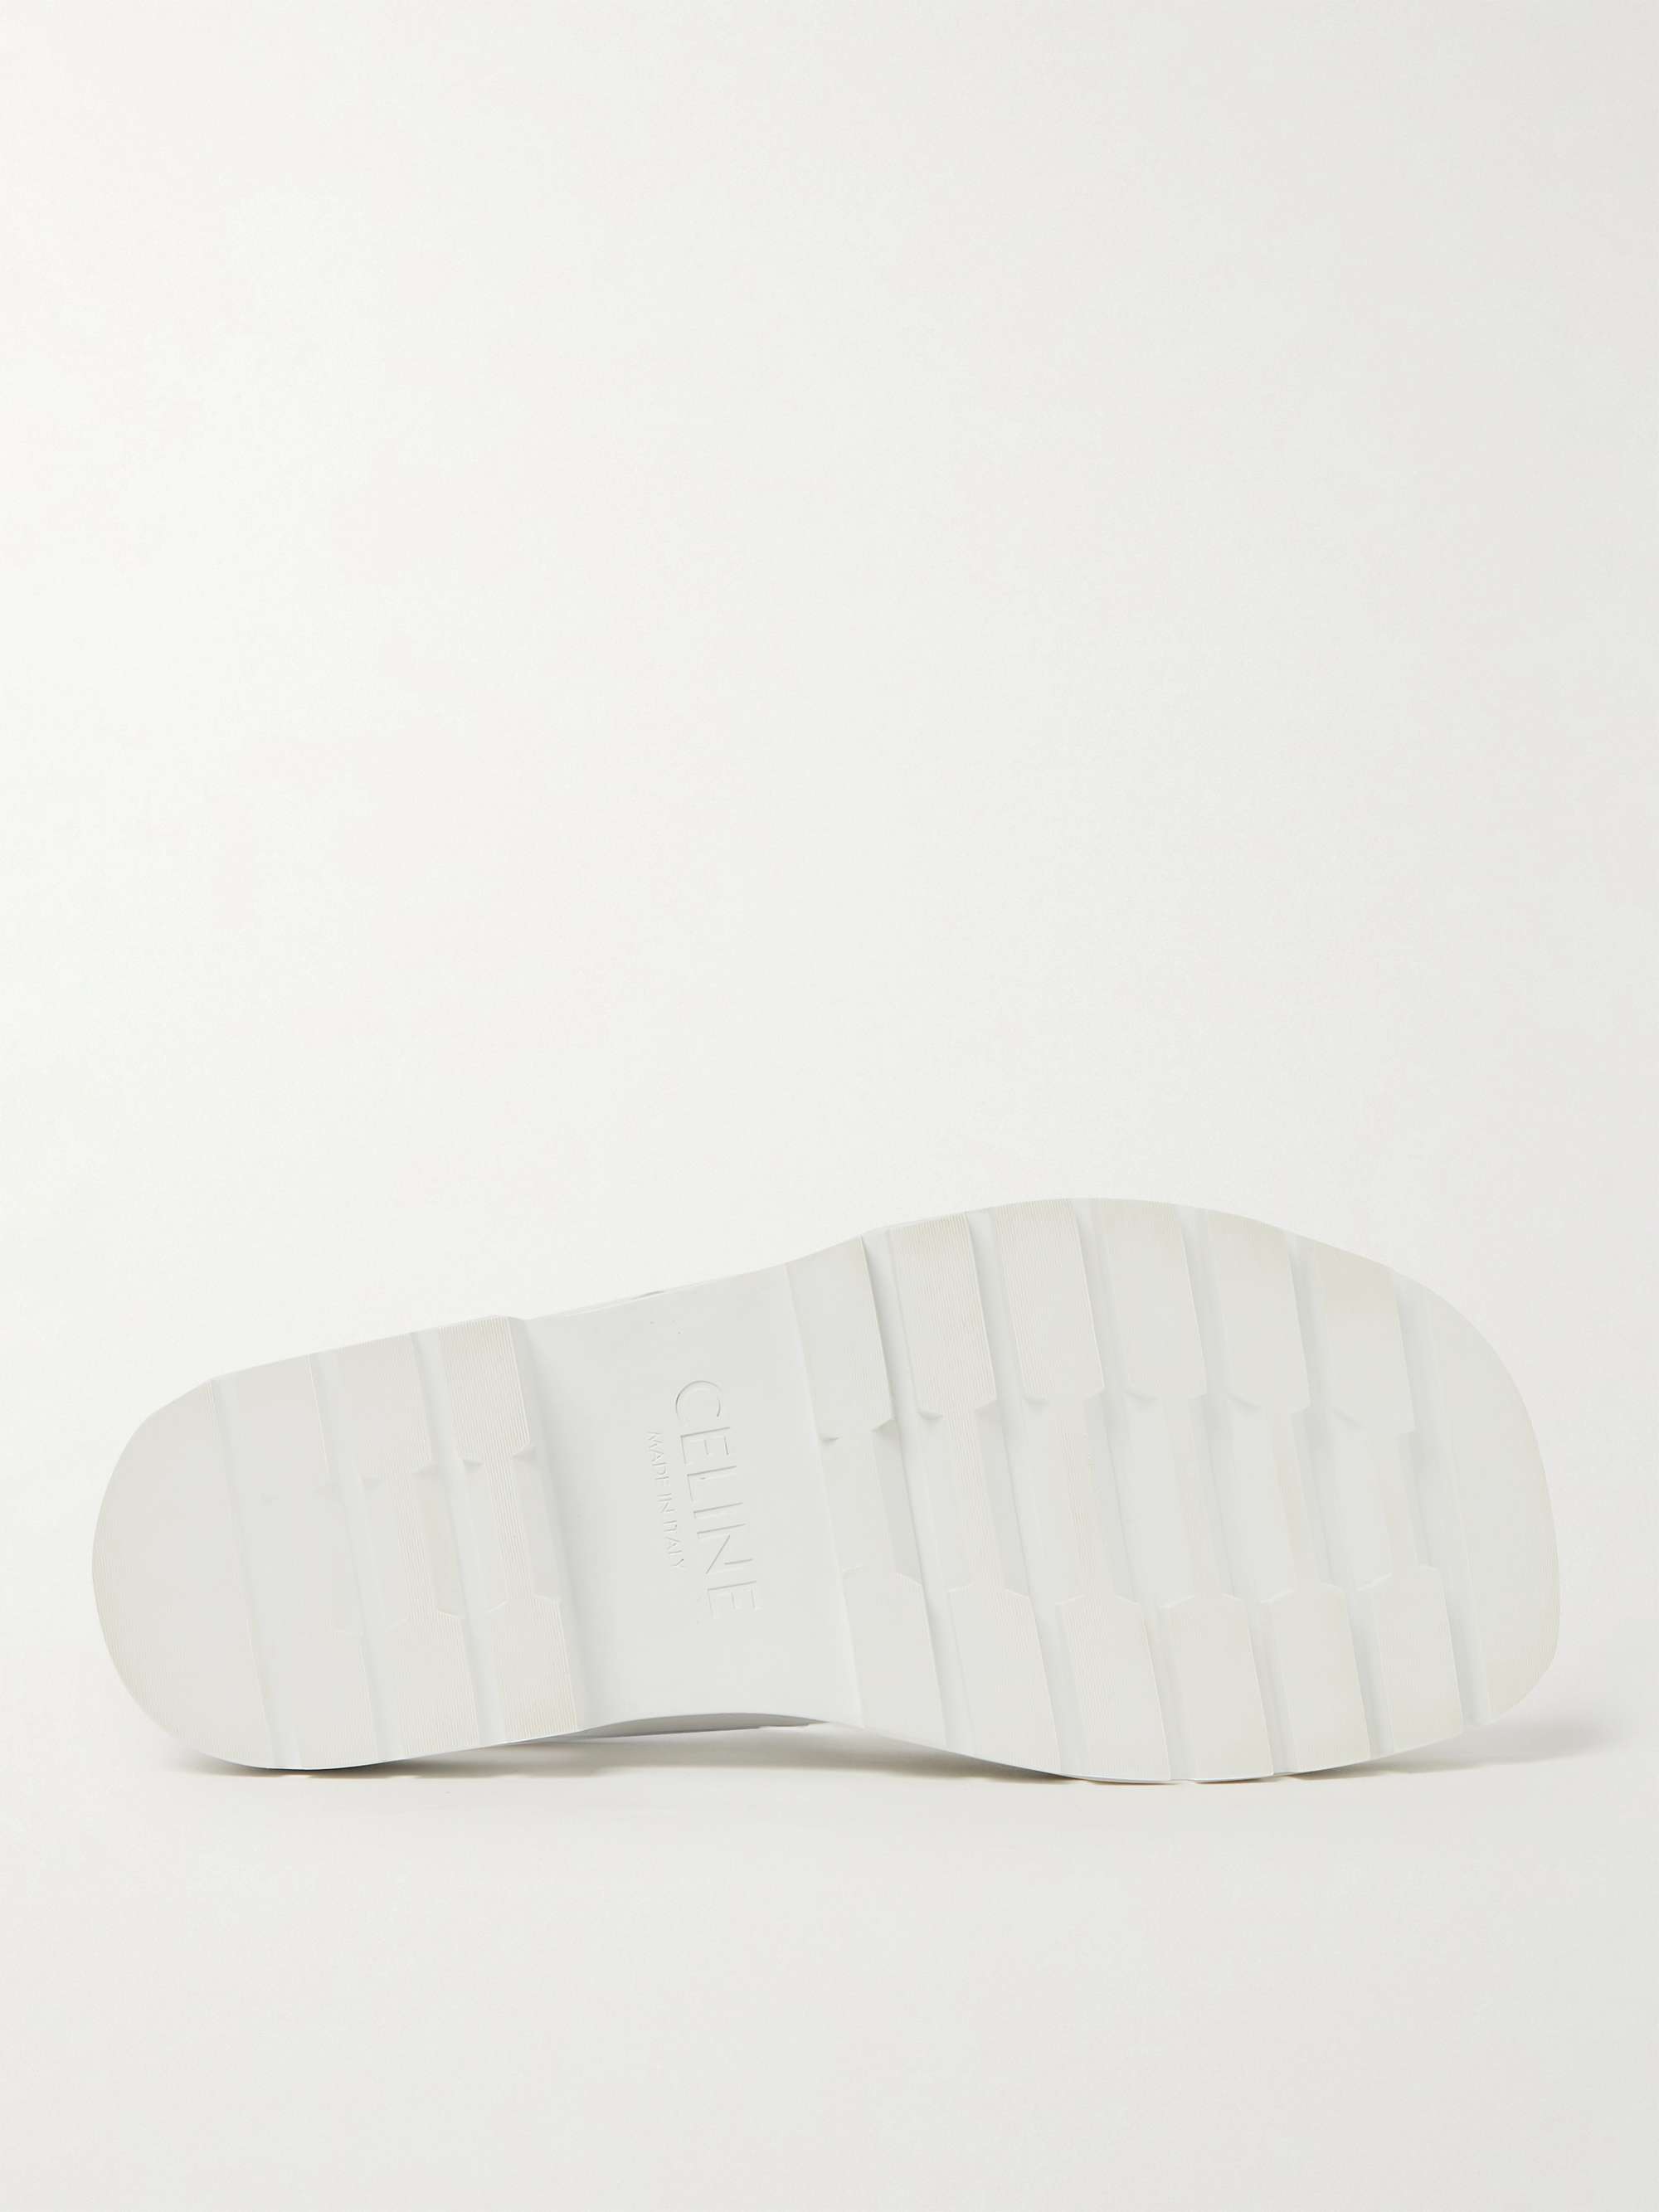 CELINE HOMME Logo-Print Leather Sandals